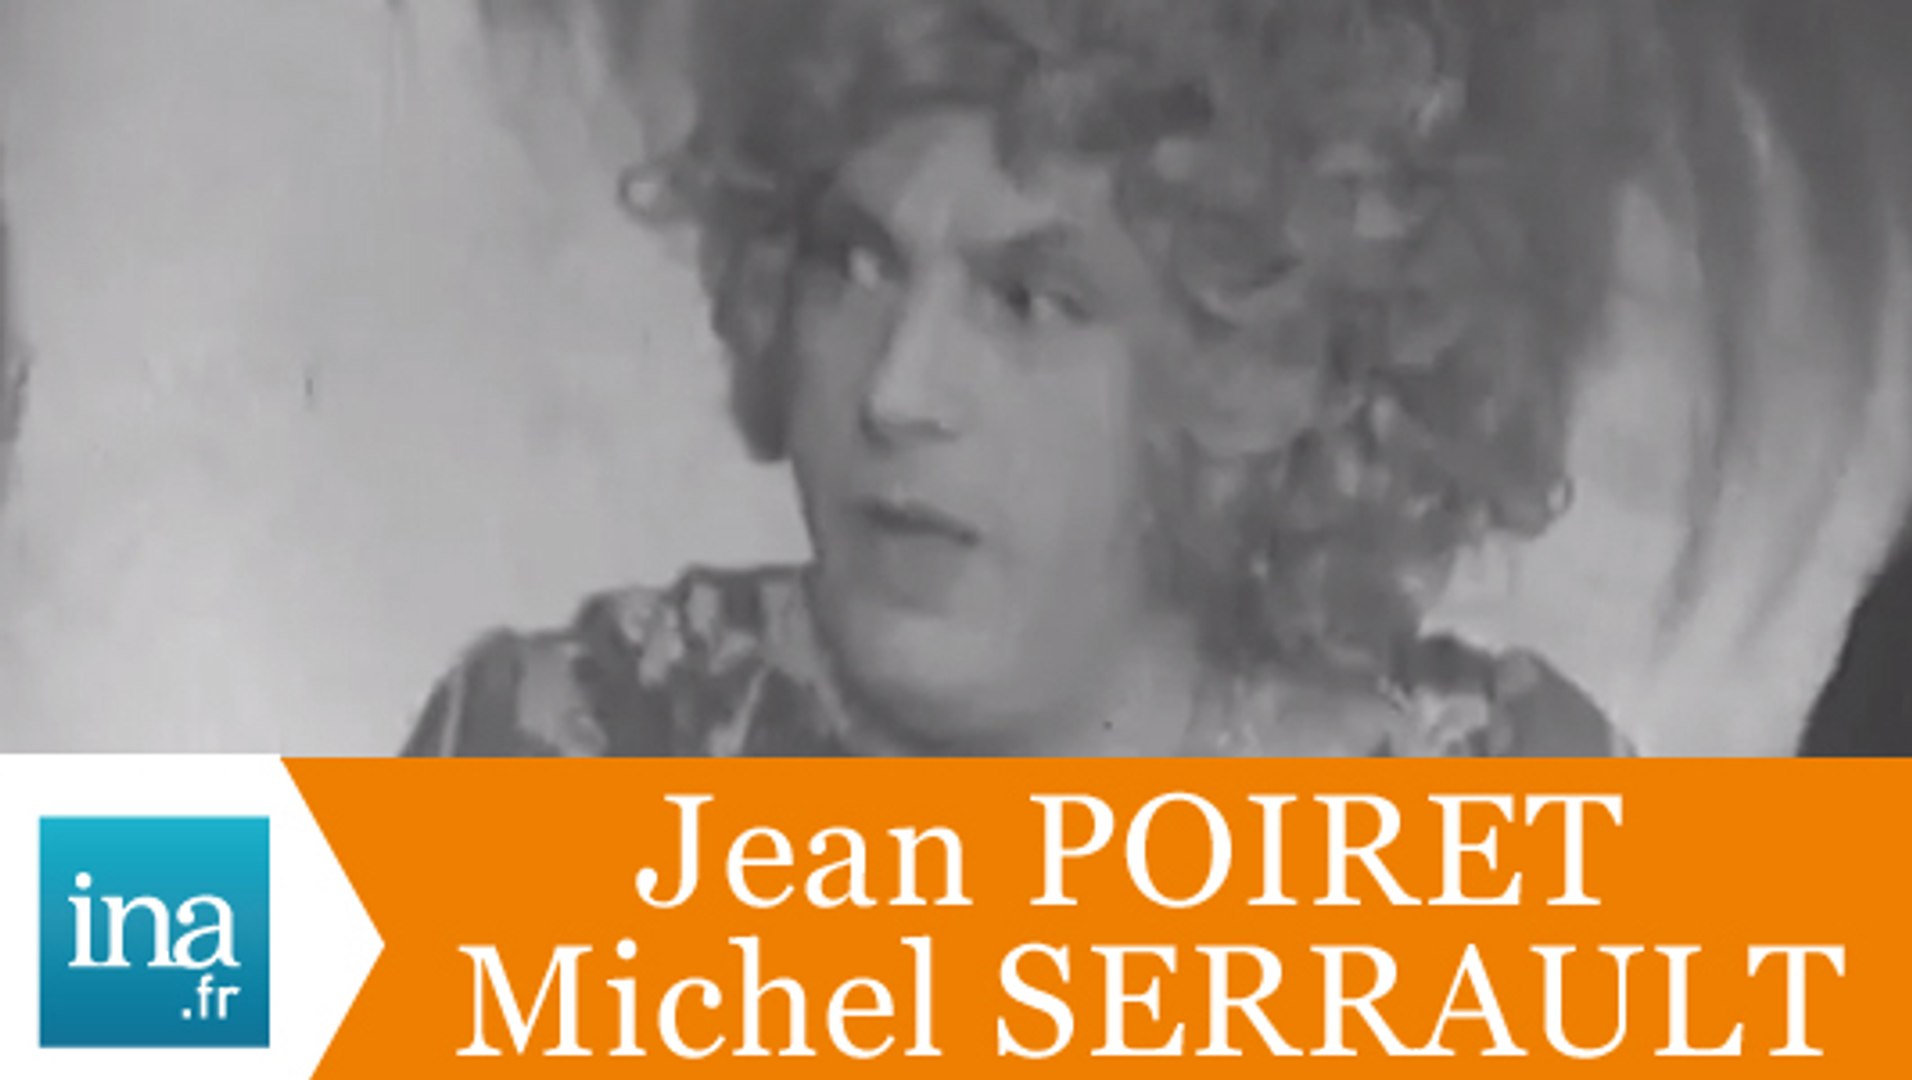 Michel Serrault et Jean Poiret "La cage aux folles" - Archive vidéo INA -  Vidéo Dailymotion